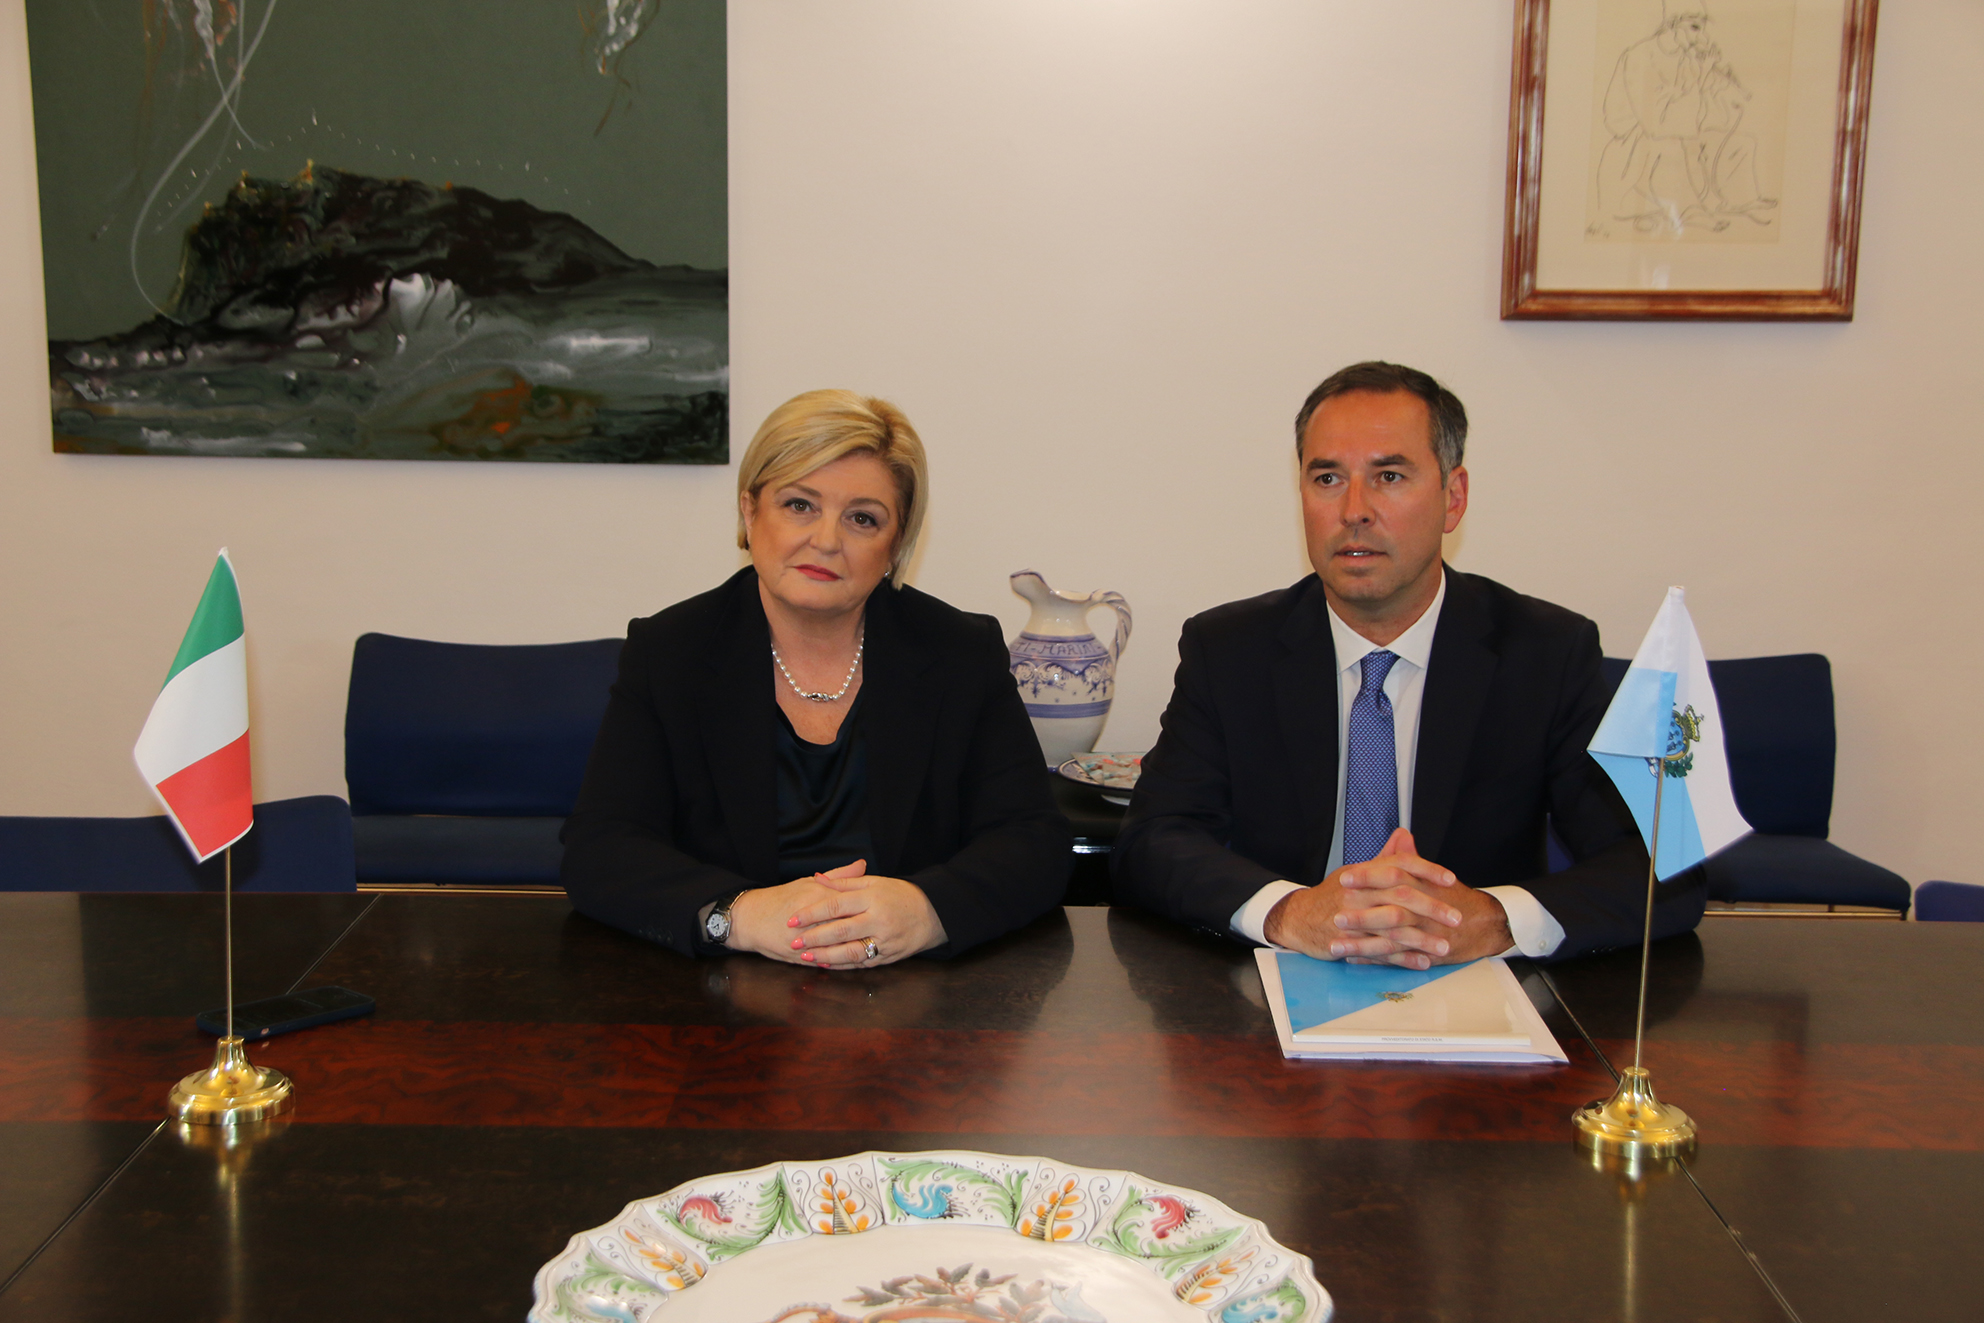 Il ministro Calderone in visita a San Marino: proposta per un osservatorio sul lavoro con l’Italia